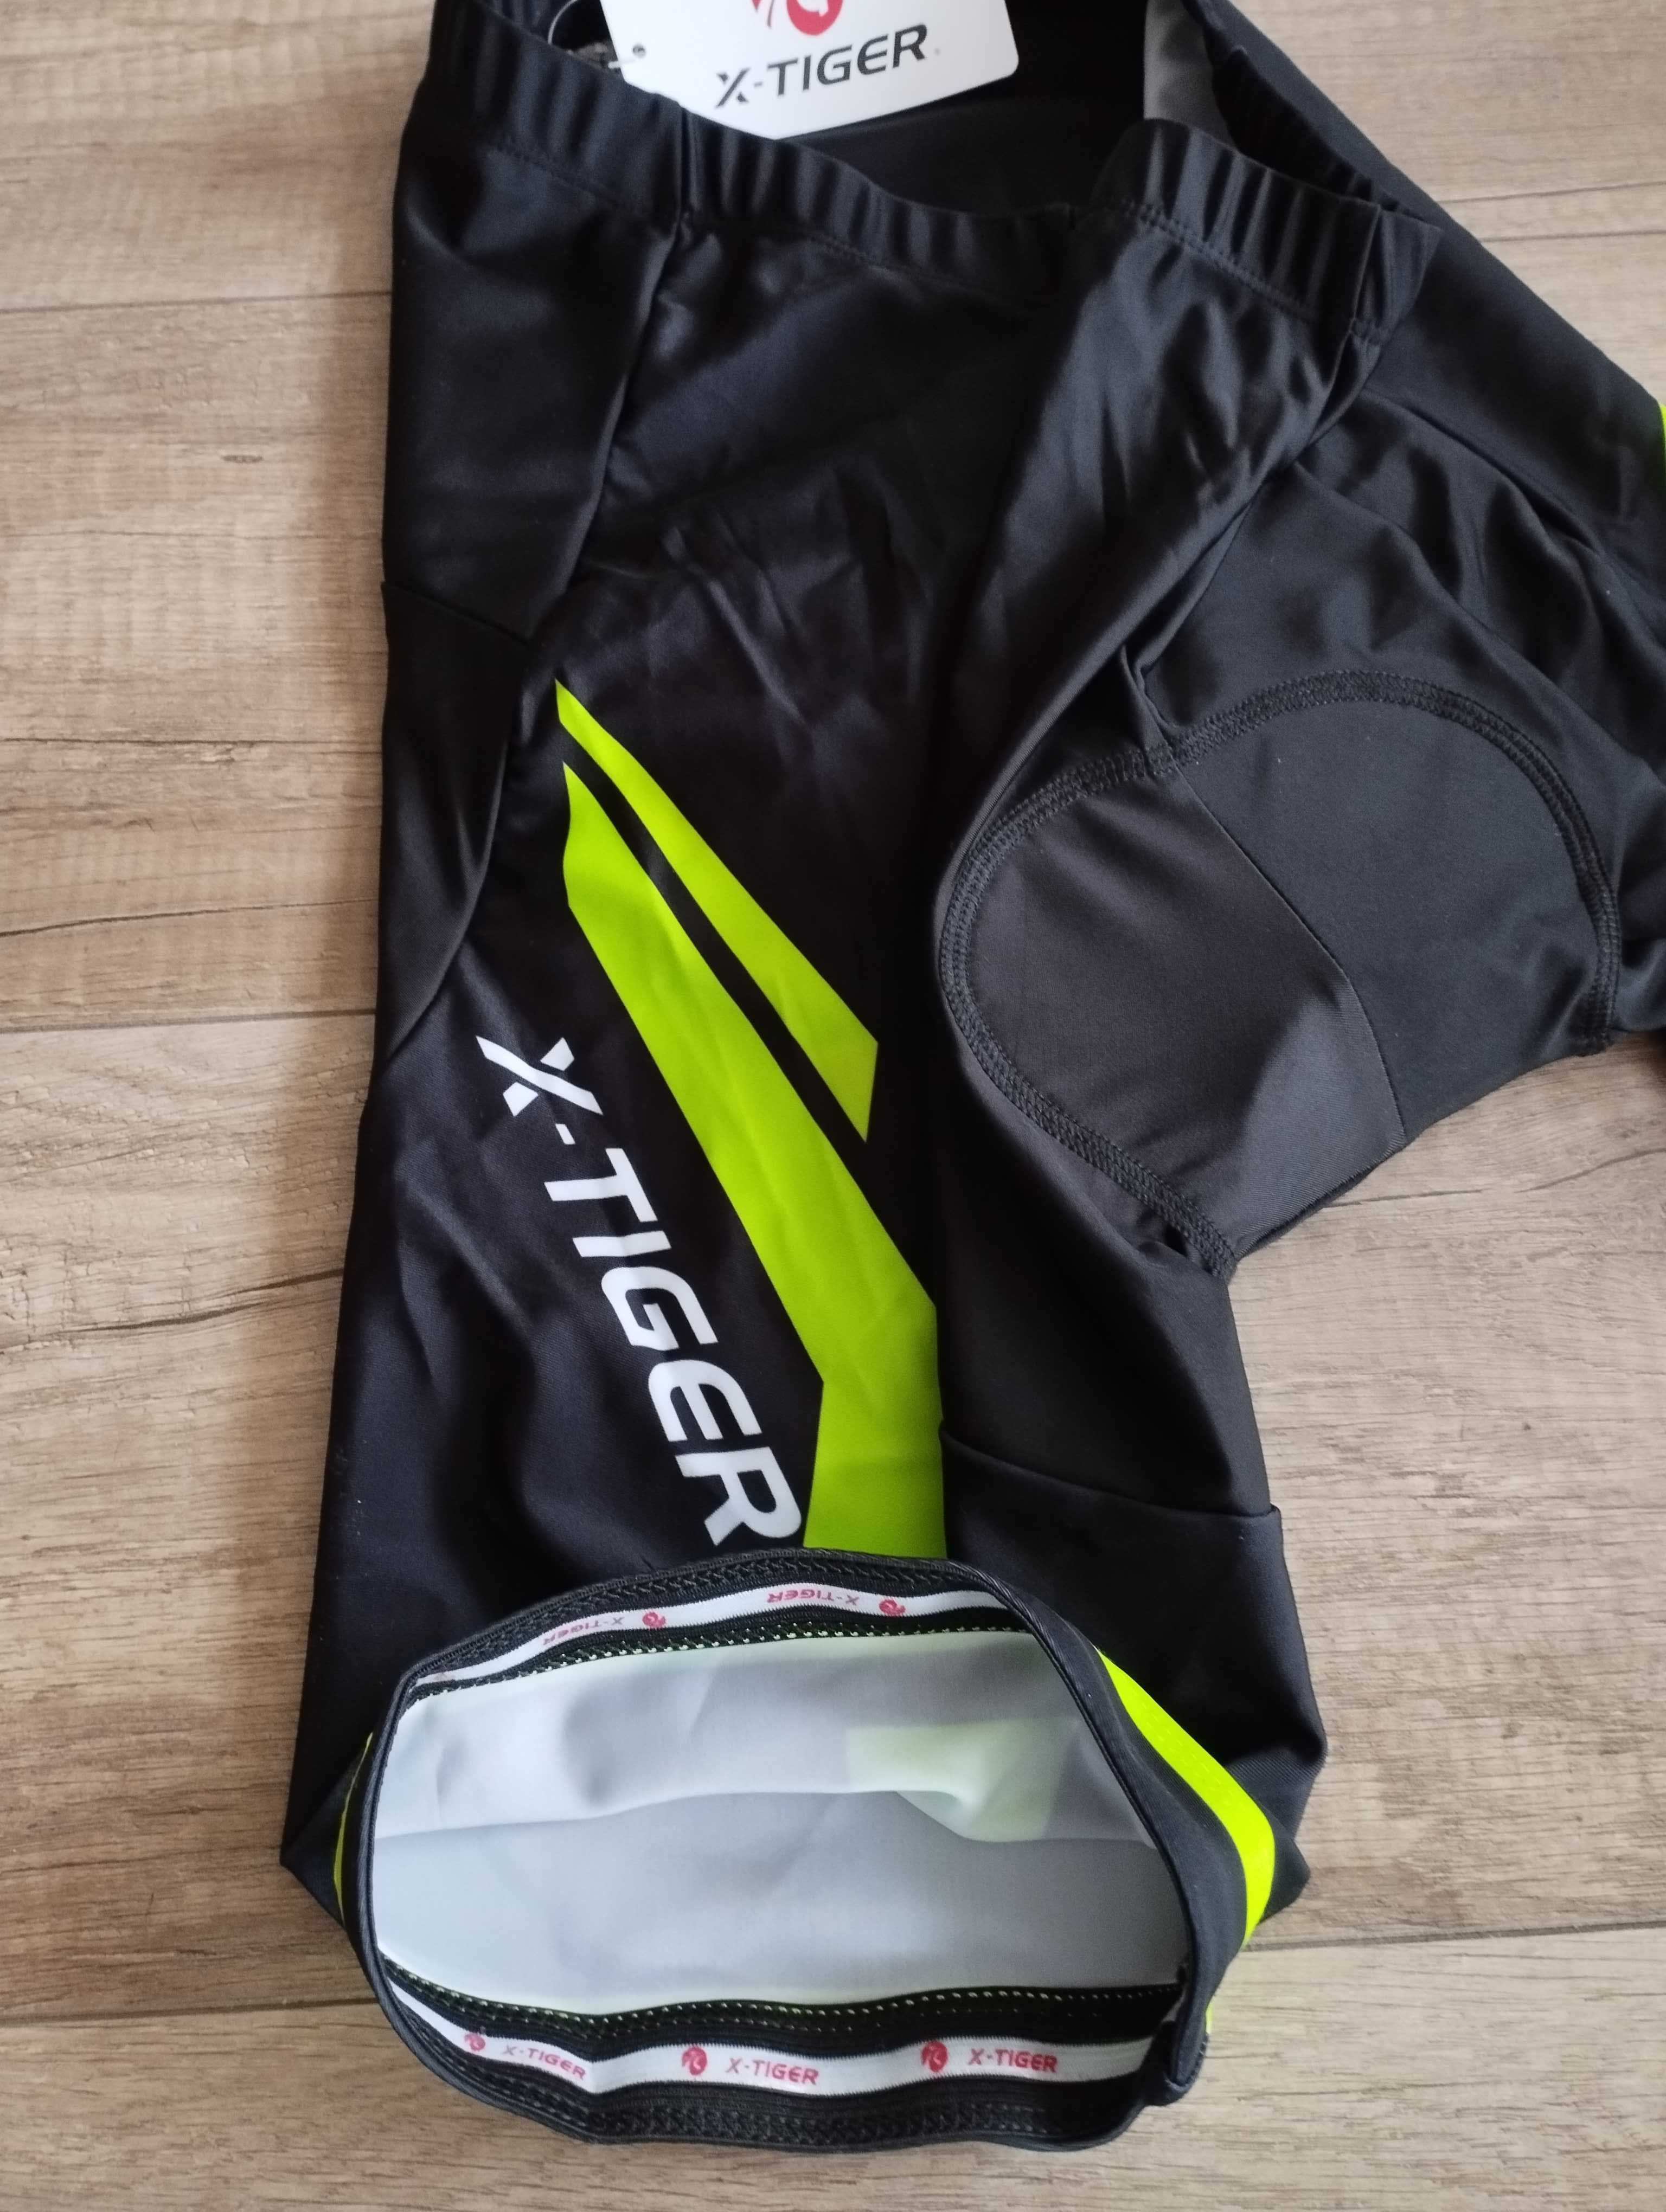 NOWY strój rowerowy X-tiger kolarski na rower XL spodenki+koszulka